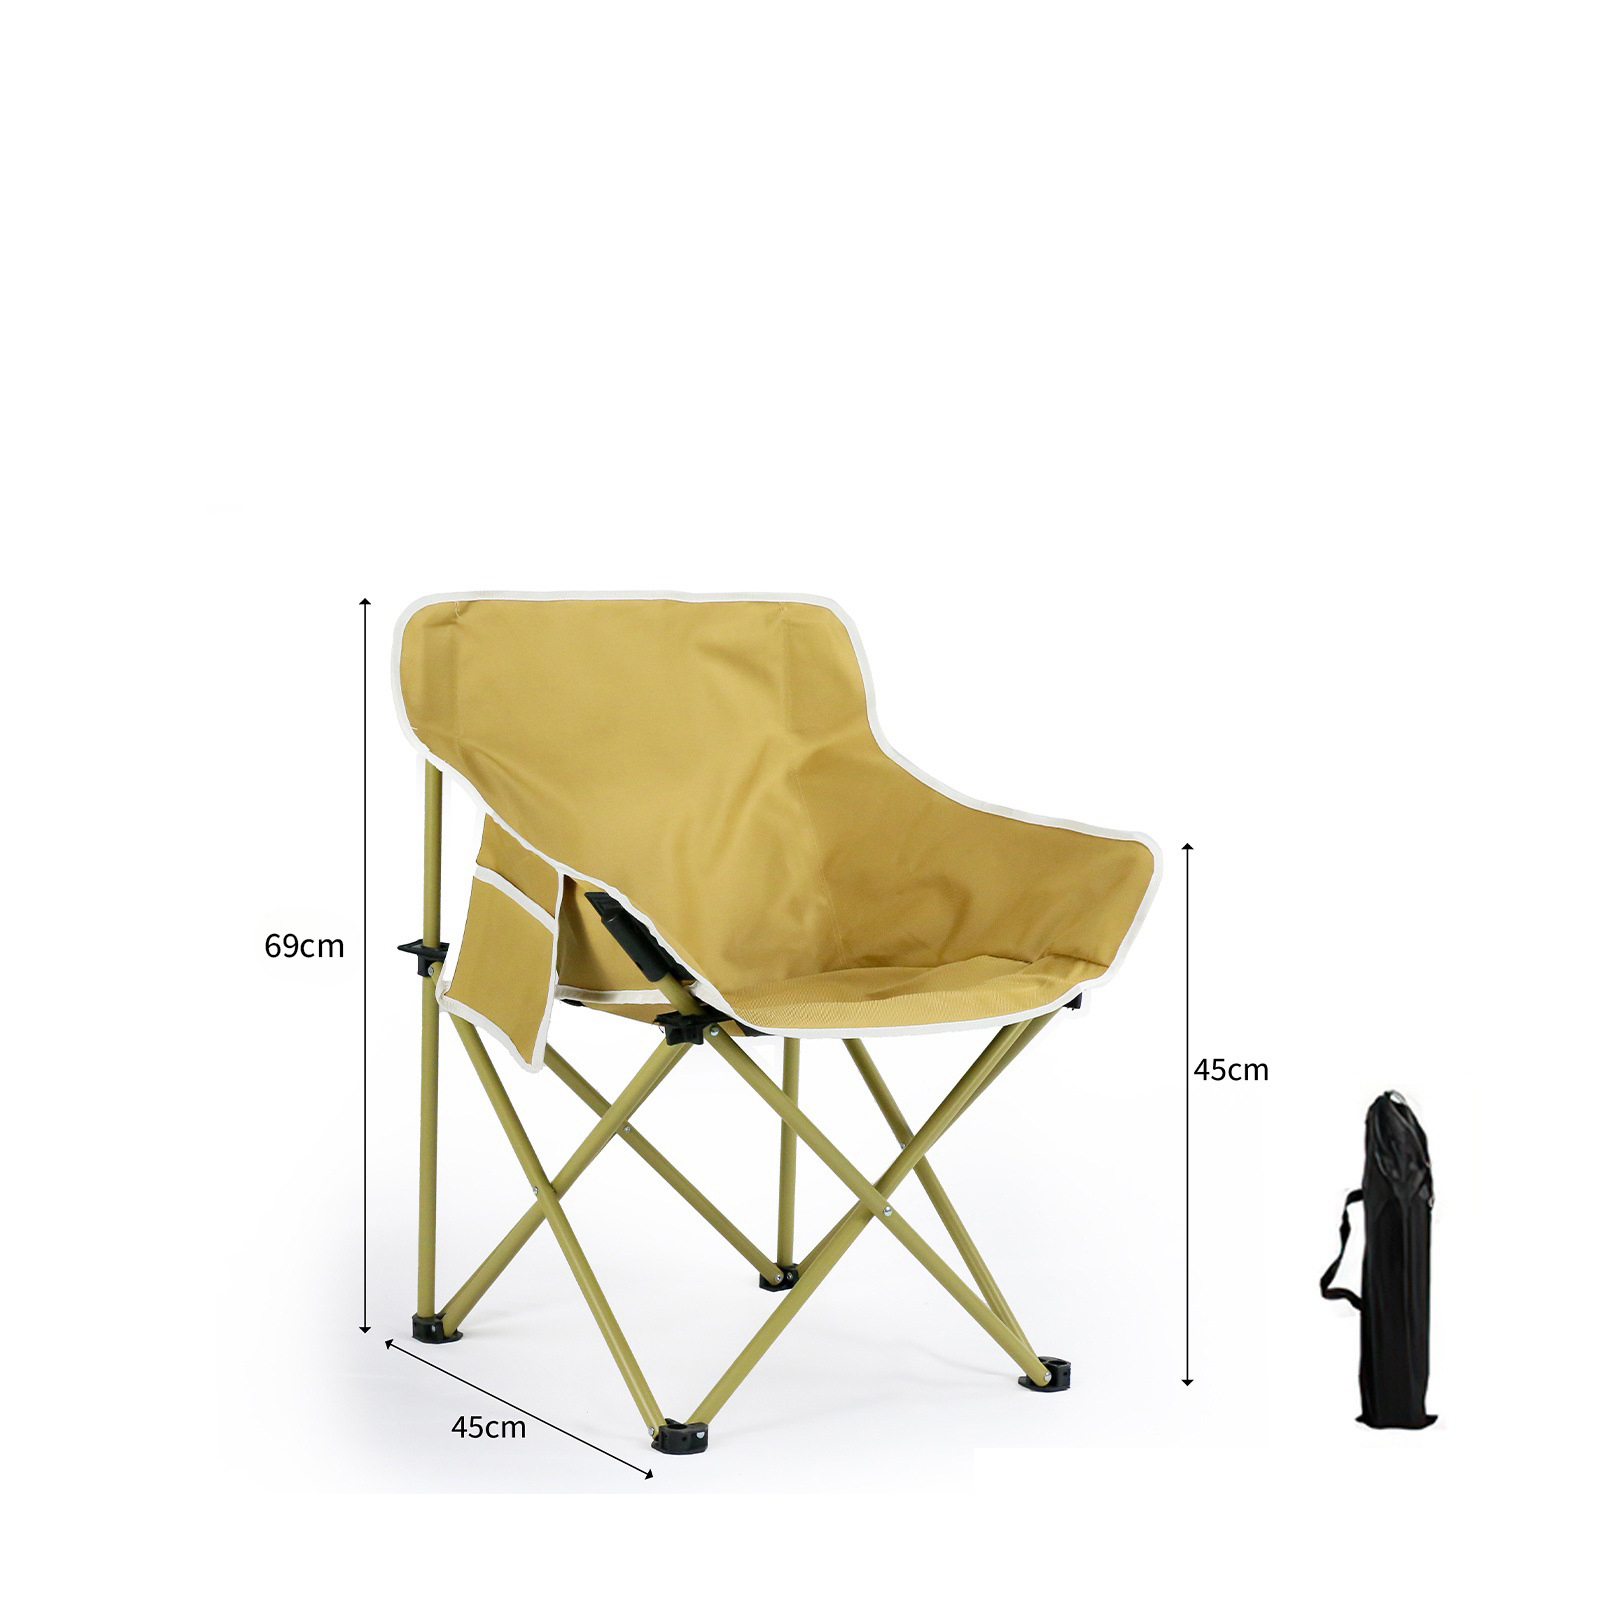 Desert yellow moon chair